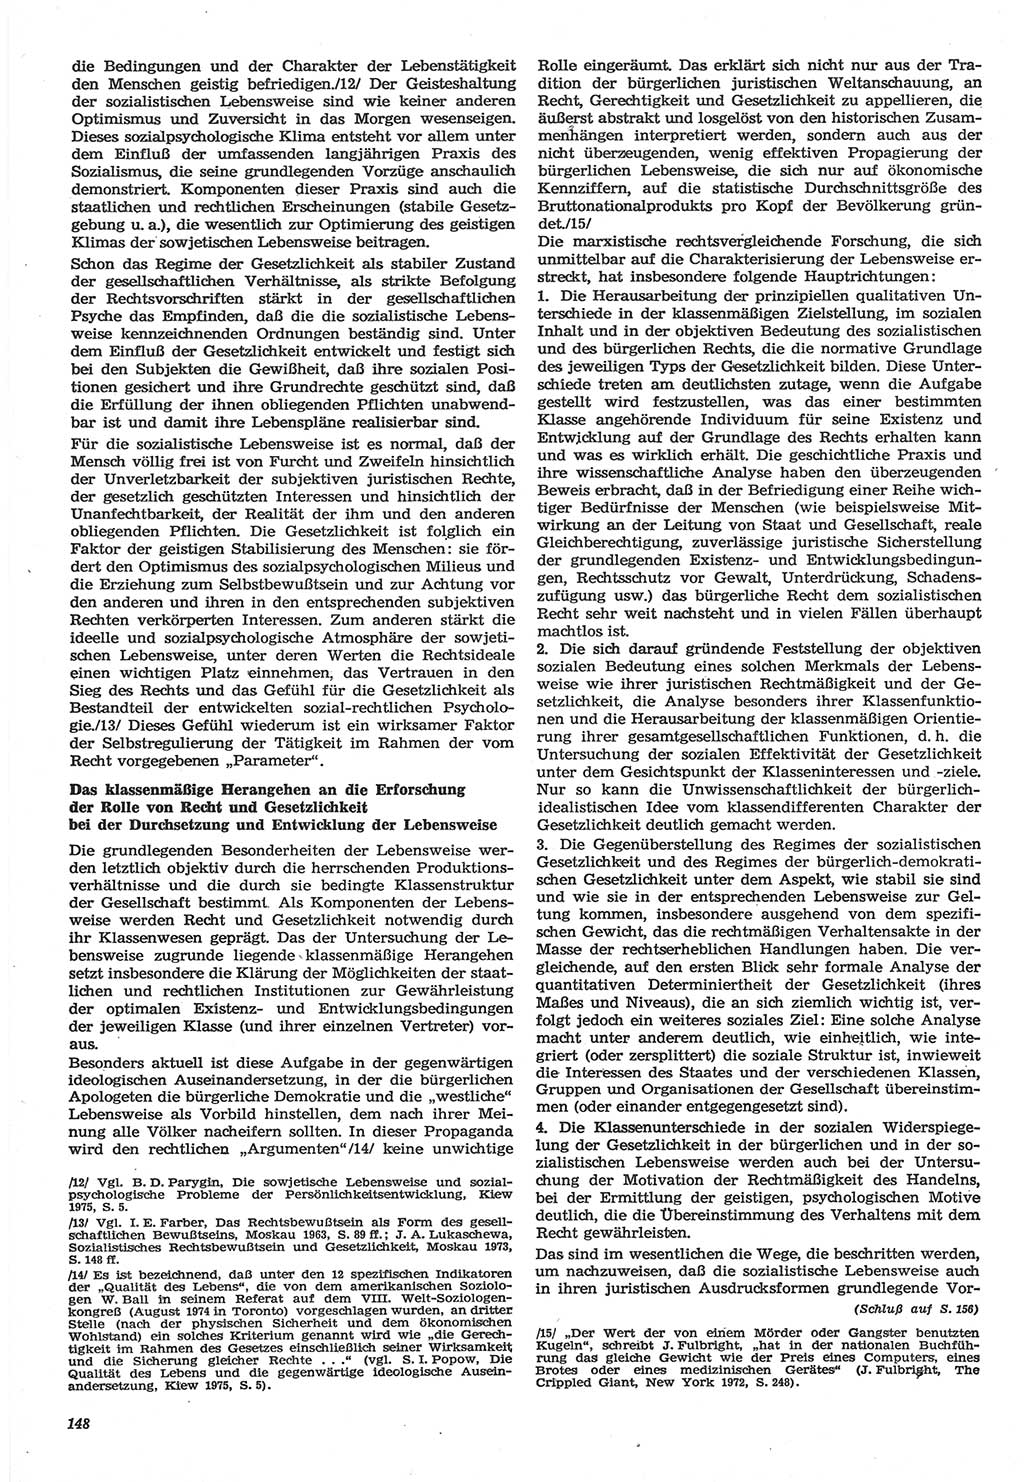 Neue Justiz (NJ), Zeitschrift für Recht und Rechtswissenschaft-Zeitschrift, sozialistisches Recht und Gesetzlichkeit, 31. Jahrgang 1977, Seite 148 (NJ DDR 1977, S. 148)